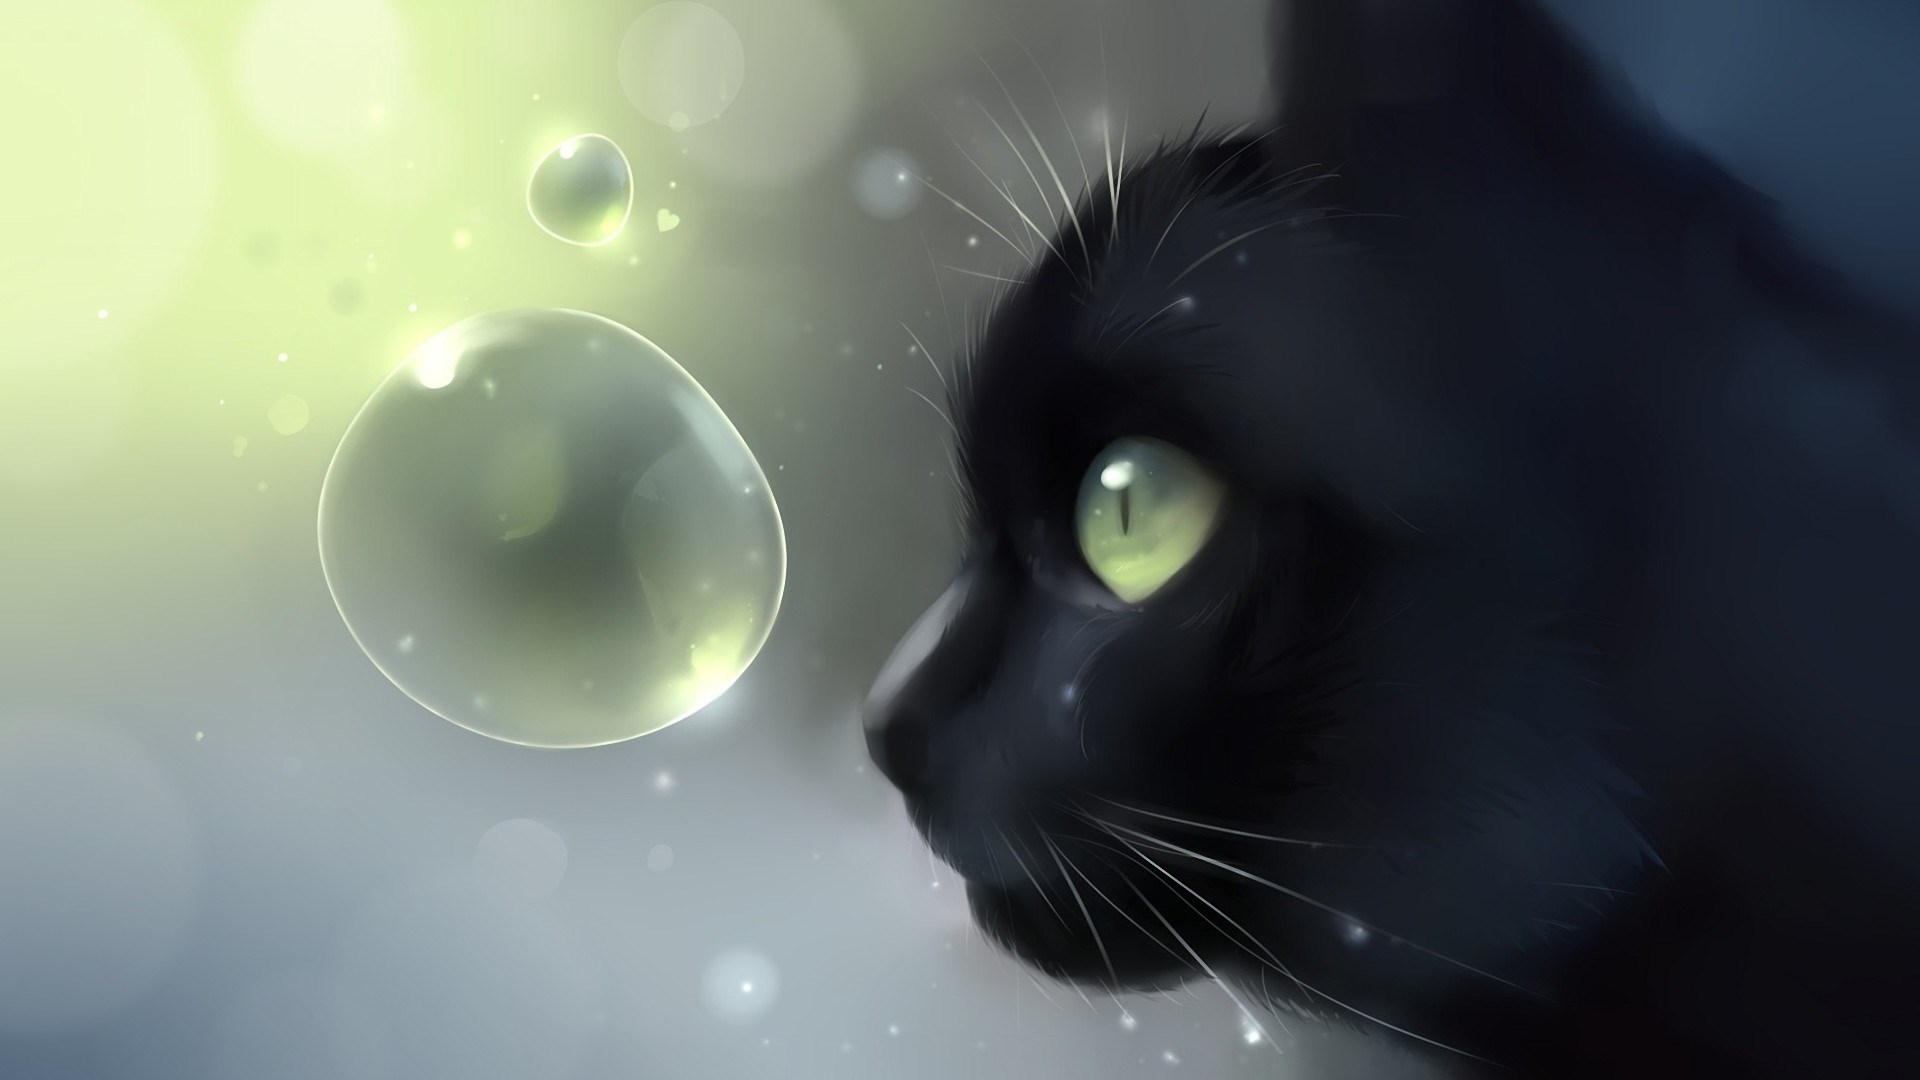 Những hình nền mèo đen Anime dễ thương đặc biệt đã sẵn sàng chờ bạn! Hãy khám phá những hình ảnh đáng yêu của những chú mèo đen dễ thương bằng cách xem bộ sưu tập hình nền của chúng tôi ngay bây giờ!